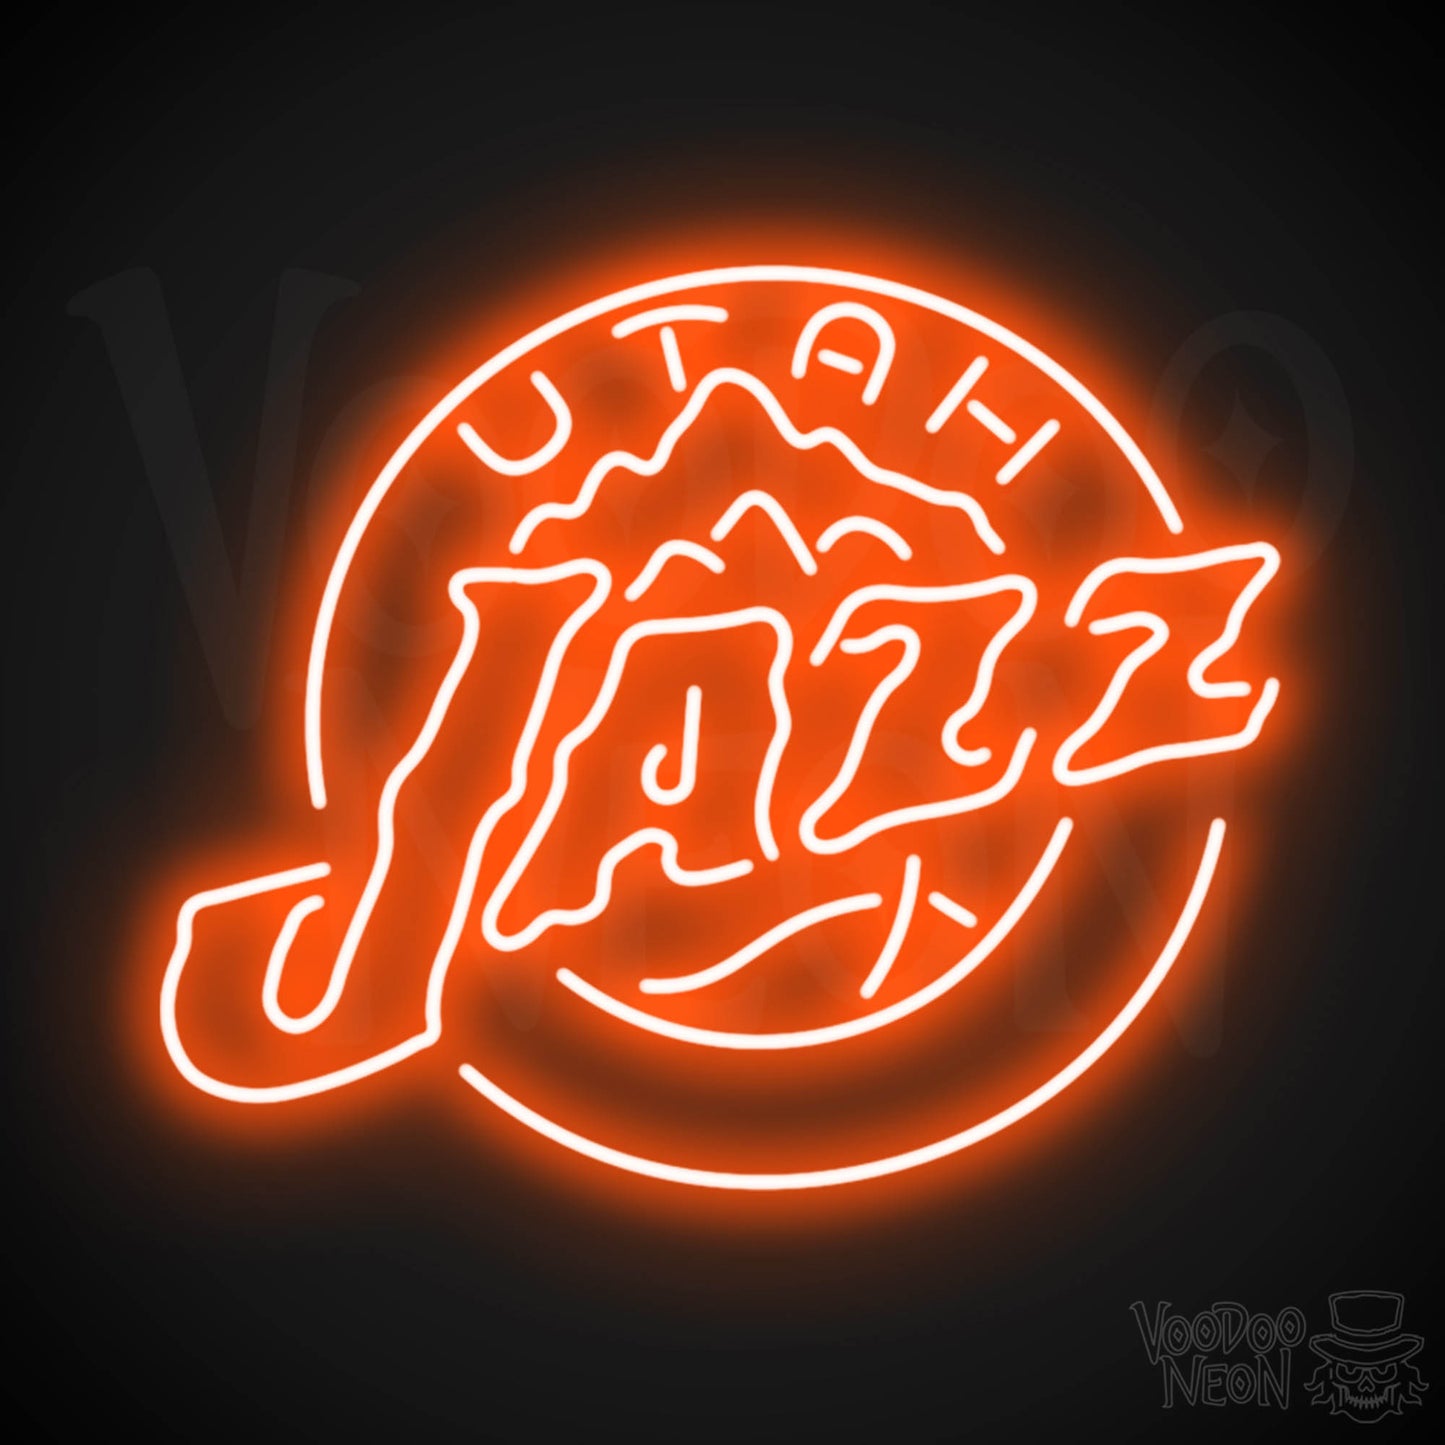 Utah Jazz Neon Sign - Utah Jazz Sign - Neon Jazz Logo Wall Art - Color Orange